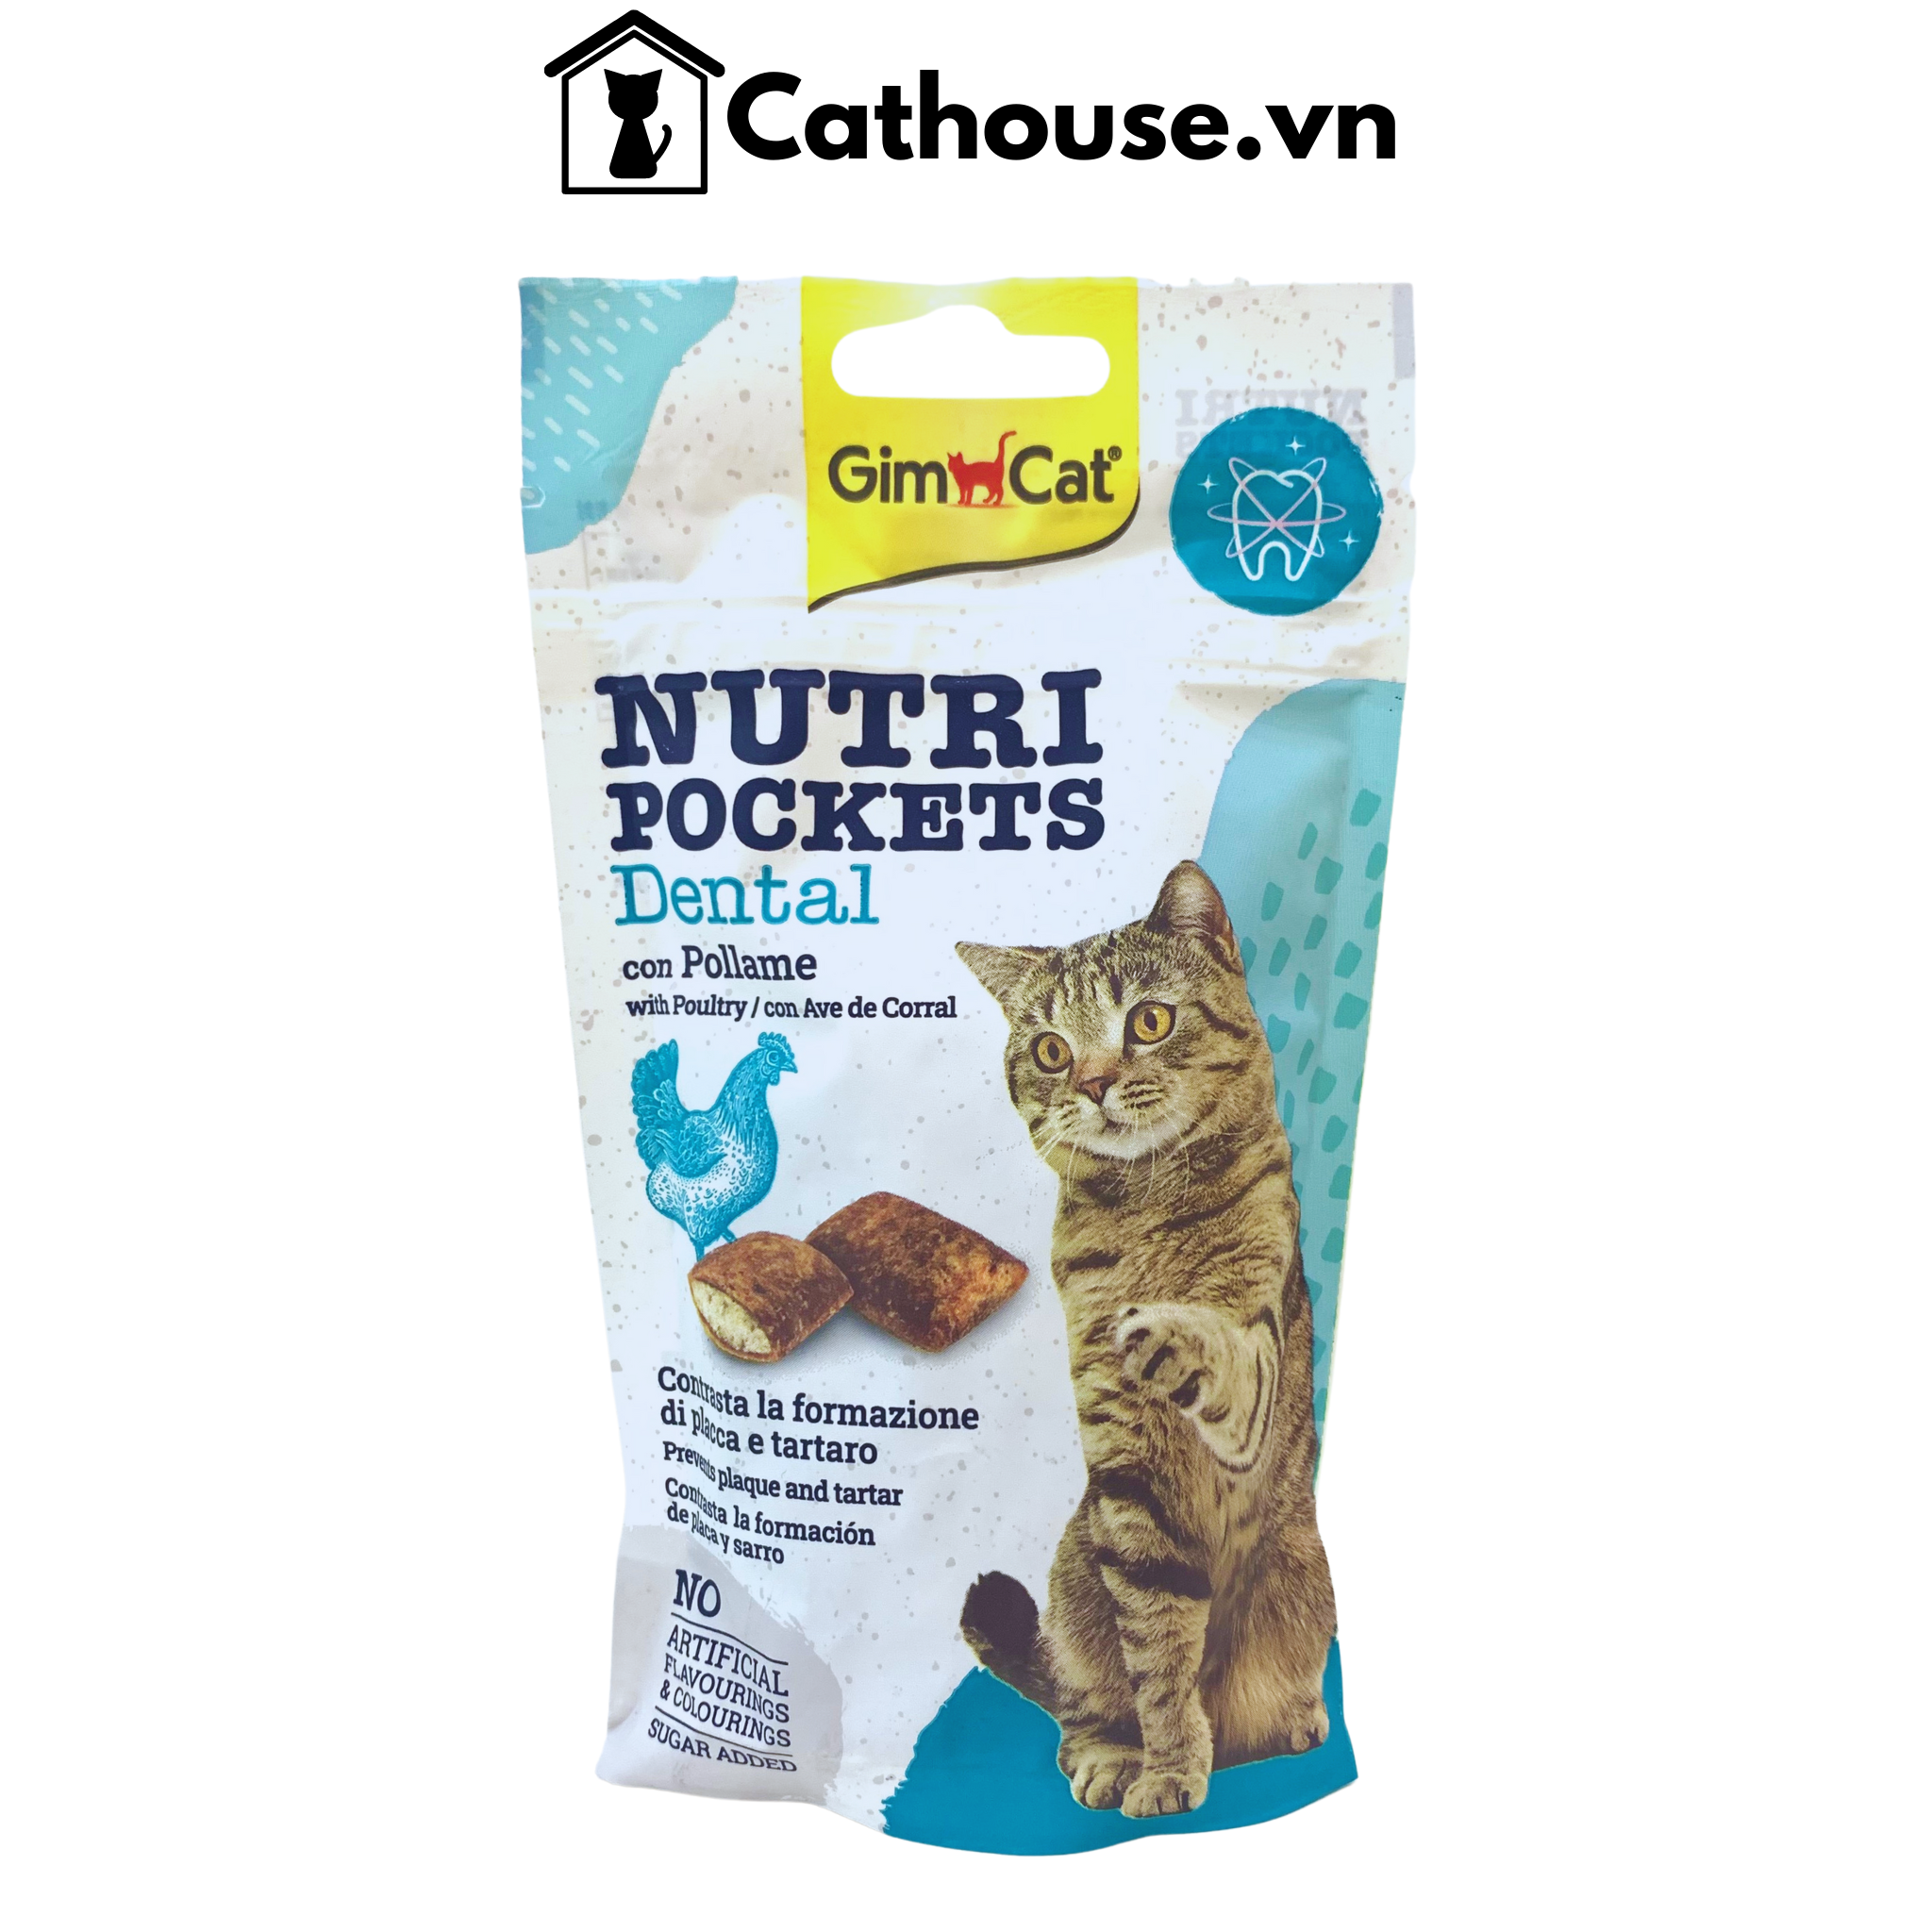  GimCat Nutri Pockets Dental 60G - Snack Bánh Quy Giòn Làm Sạch Và Ngăn Ngừa Cao Răng Cho Mèo 